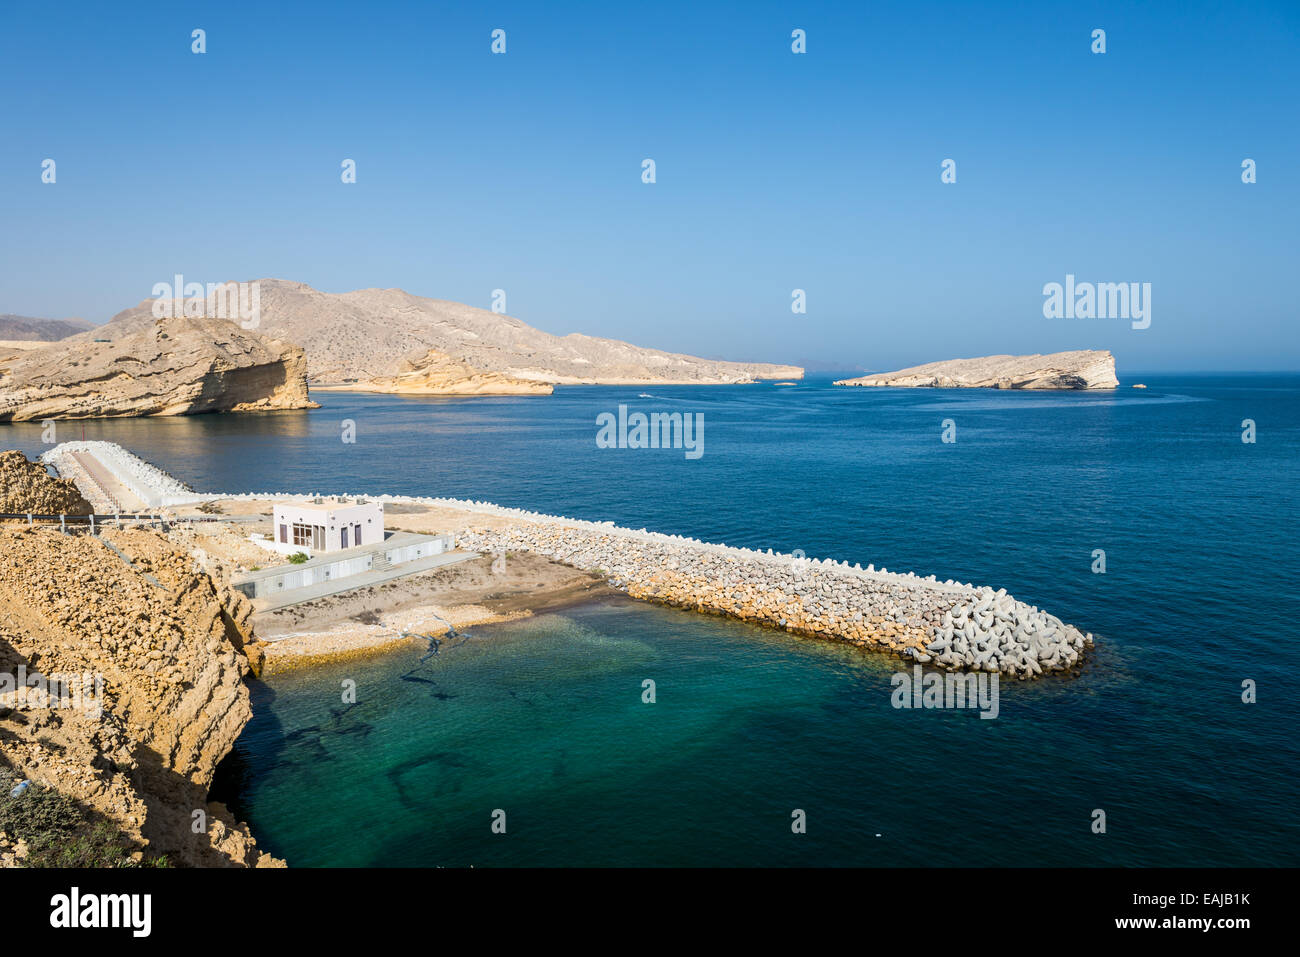 Kalksteinfelsen steht über dem blauen Wasser des Arabischen Meeres. Oman. Stockfoto